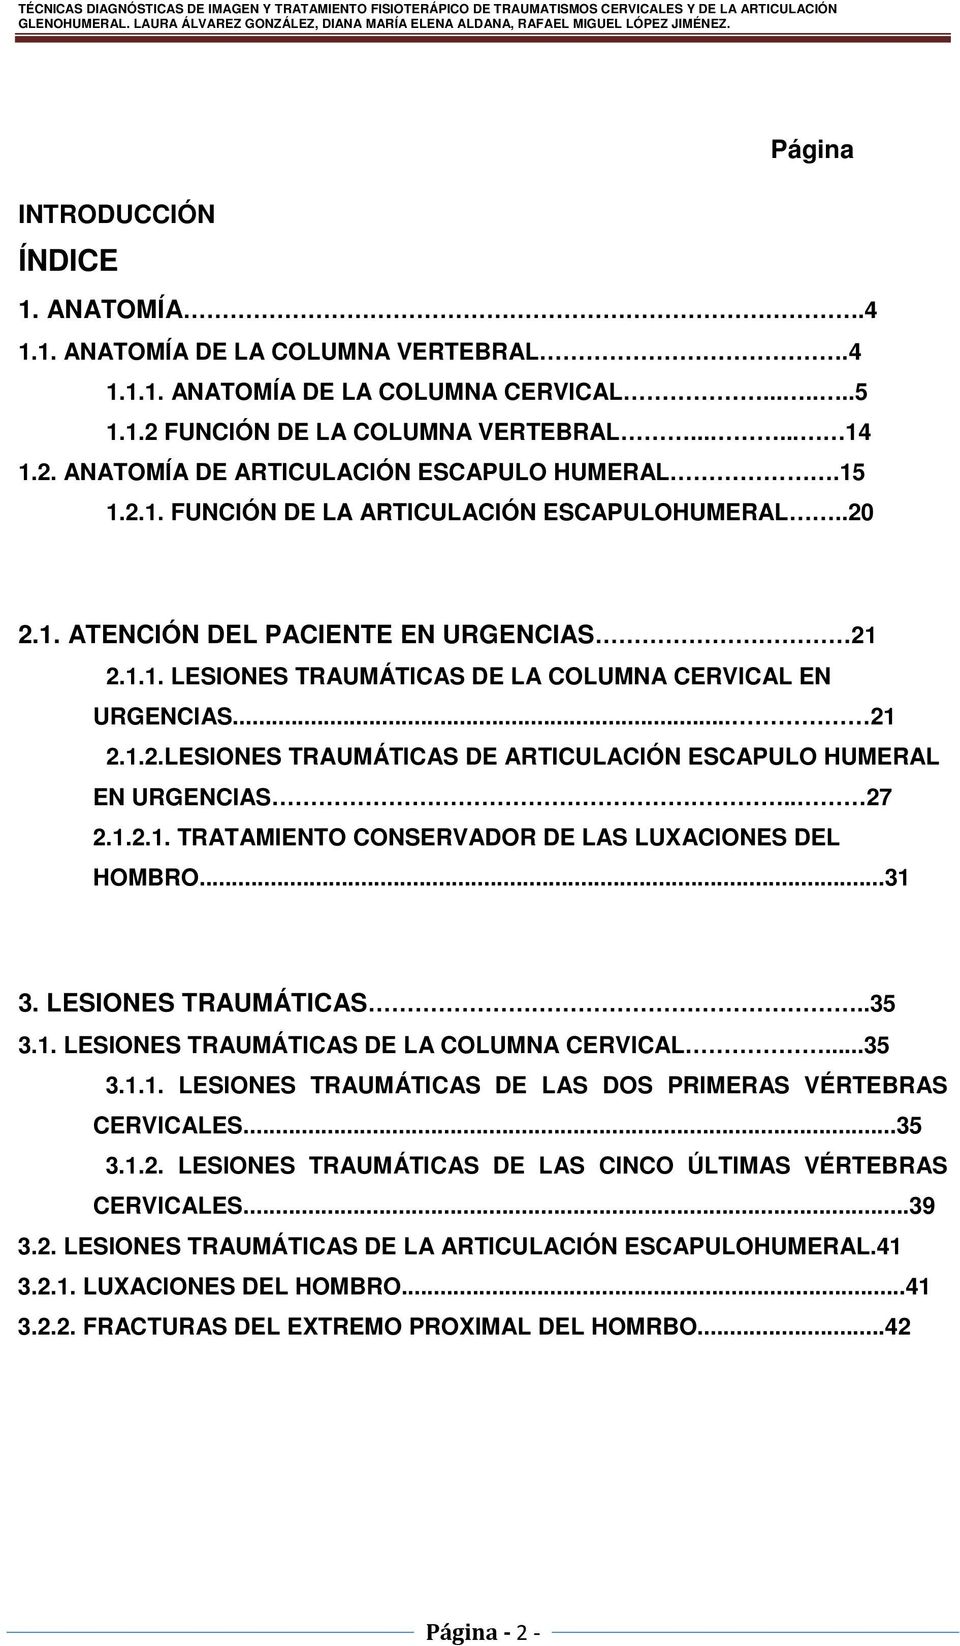 . 27 2.1.2.1. TRATAMIENTO CONSERVADOR DE LAS LUXACIONES DEL HOMBRO...31 3. LESIONES TRAUMÁTICAS..35 3.1. LESIONES TRAUMÁTICAS DE LA COLUMNA CERVICAL...35 3.1.1. LESIONES TRAUMÁTICAS DE LAS DOS PRIMERAS VÉRTEBRAS CERVICALES.